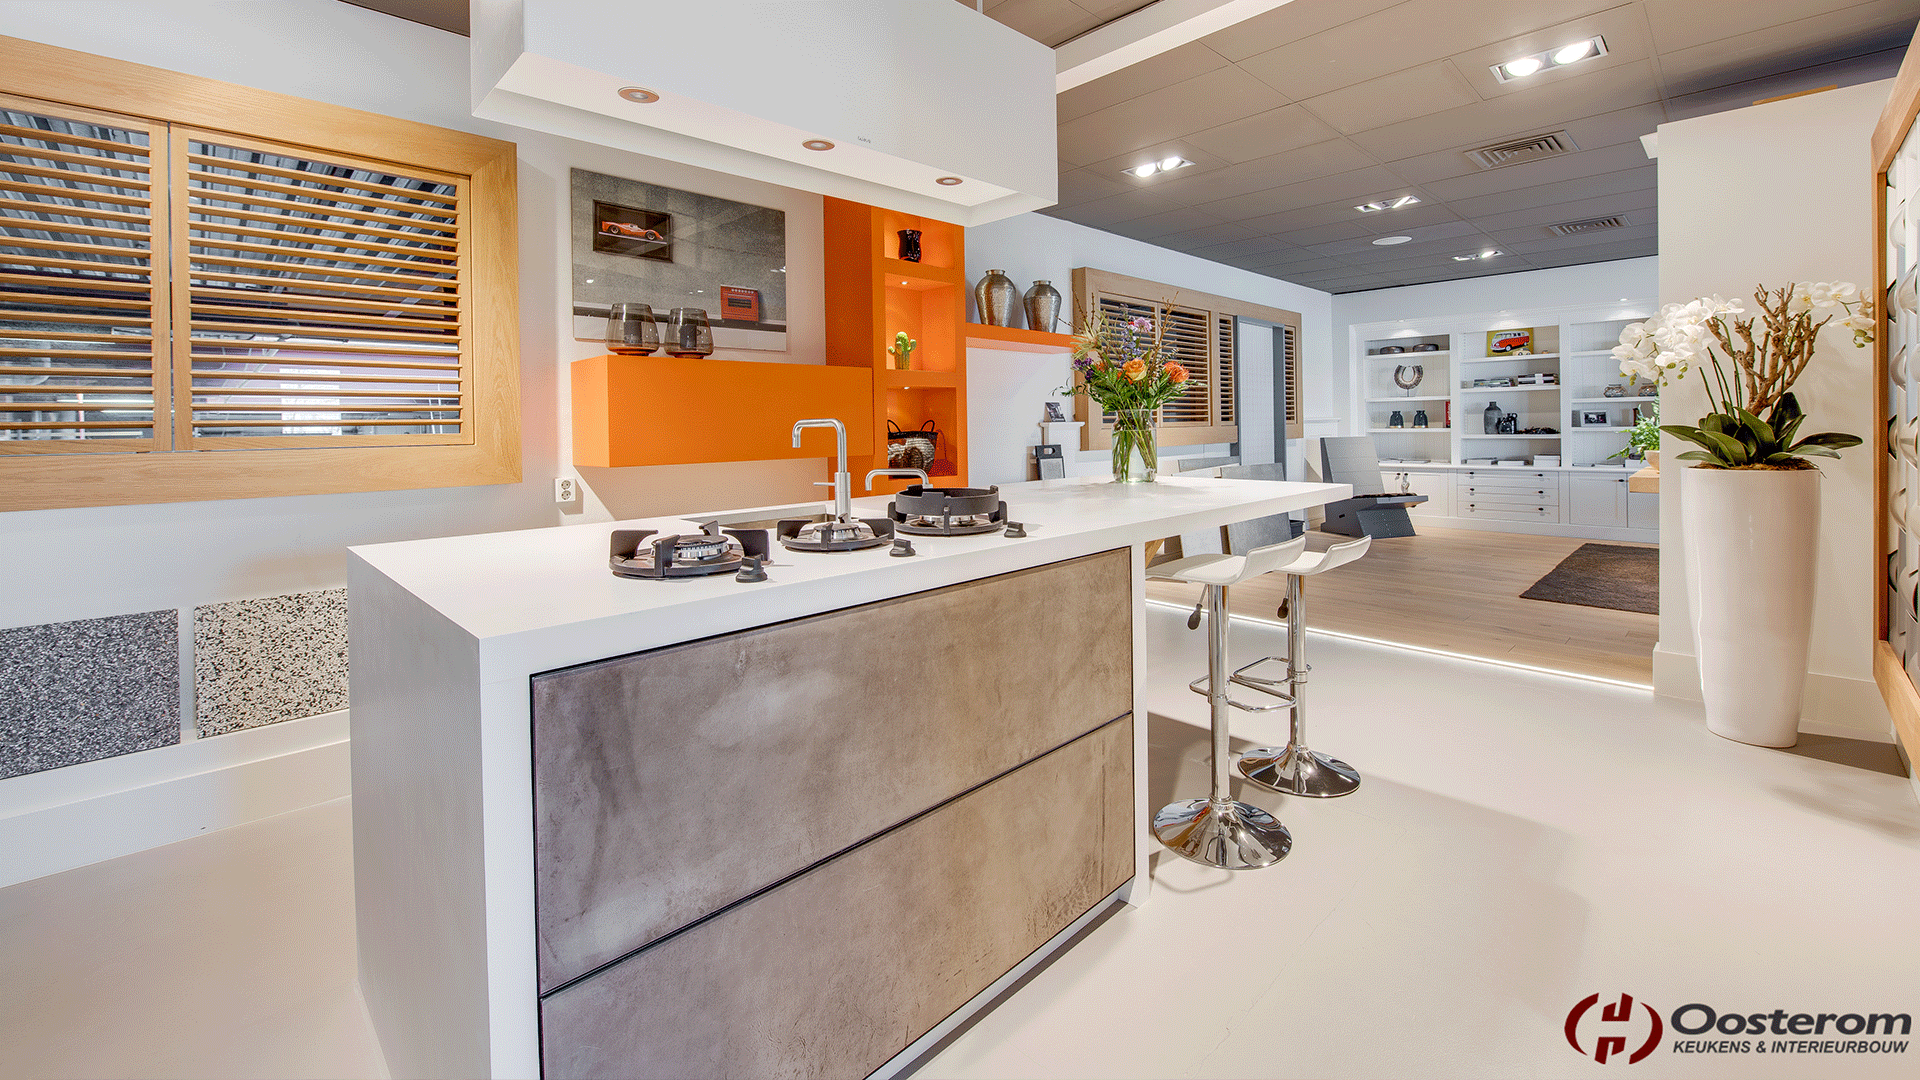 Cozinha Integrada com pisos diferentes